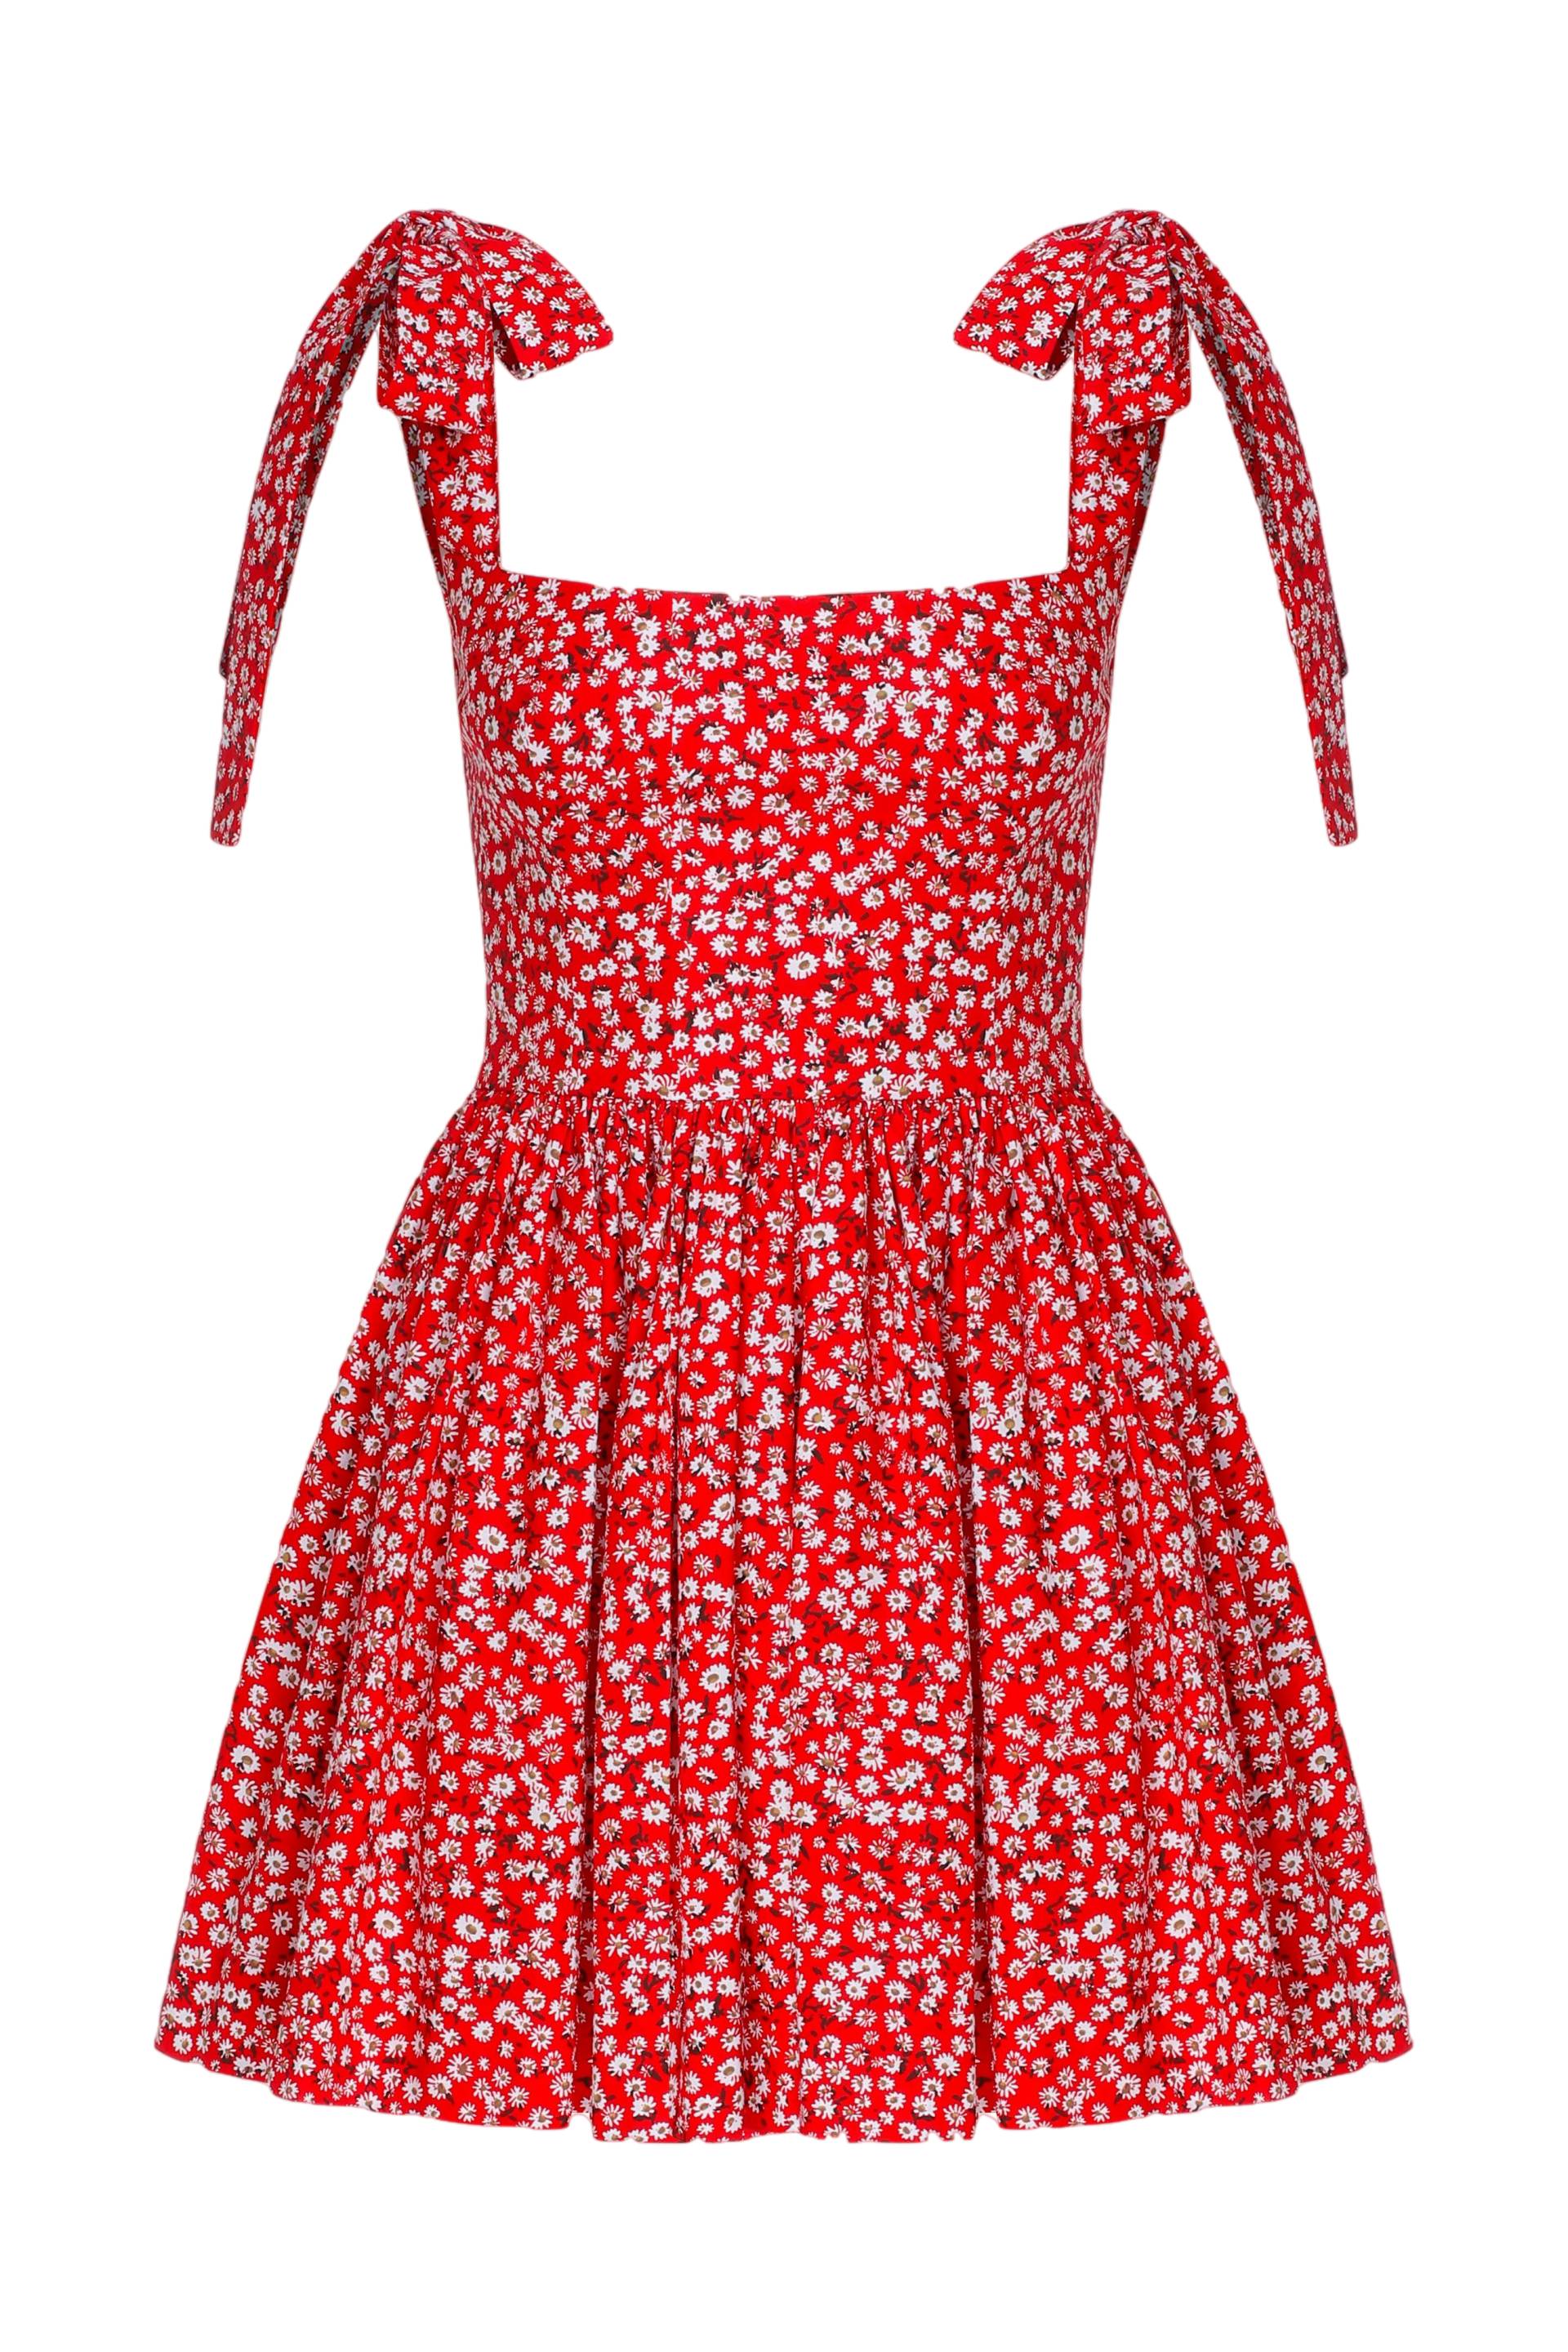 Audree Floral Print Poplin Mini Dress in Candy Red von Nazli Ceren